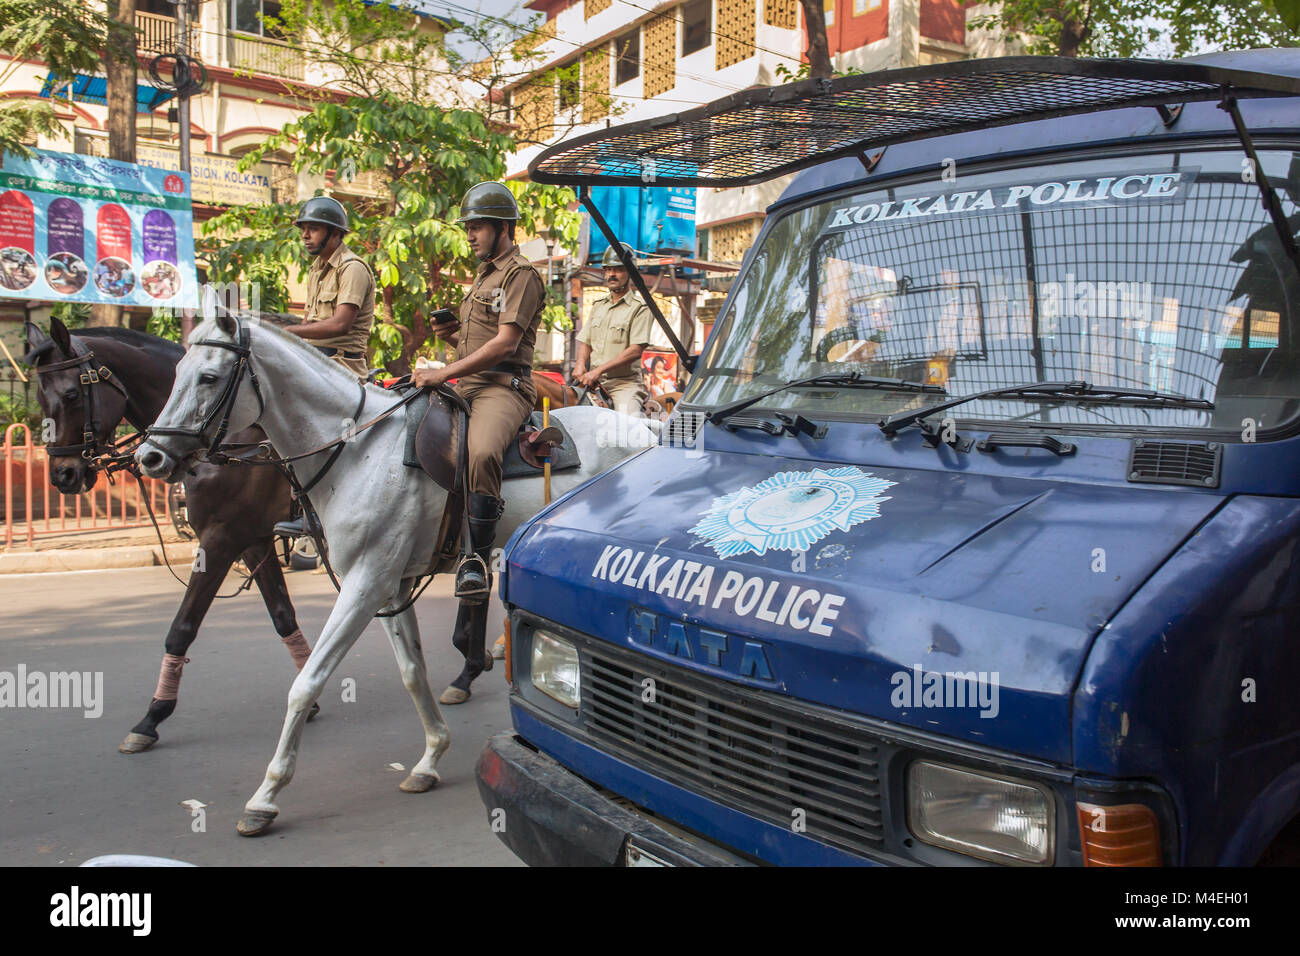 Kolkata, India - Abril 3, 2017: la policía montada a caballo patrullando las calles en el centro de Calcuta, Bengala Occidental, India. Foto de stock